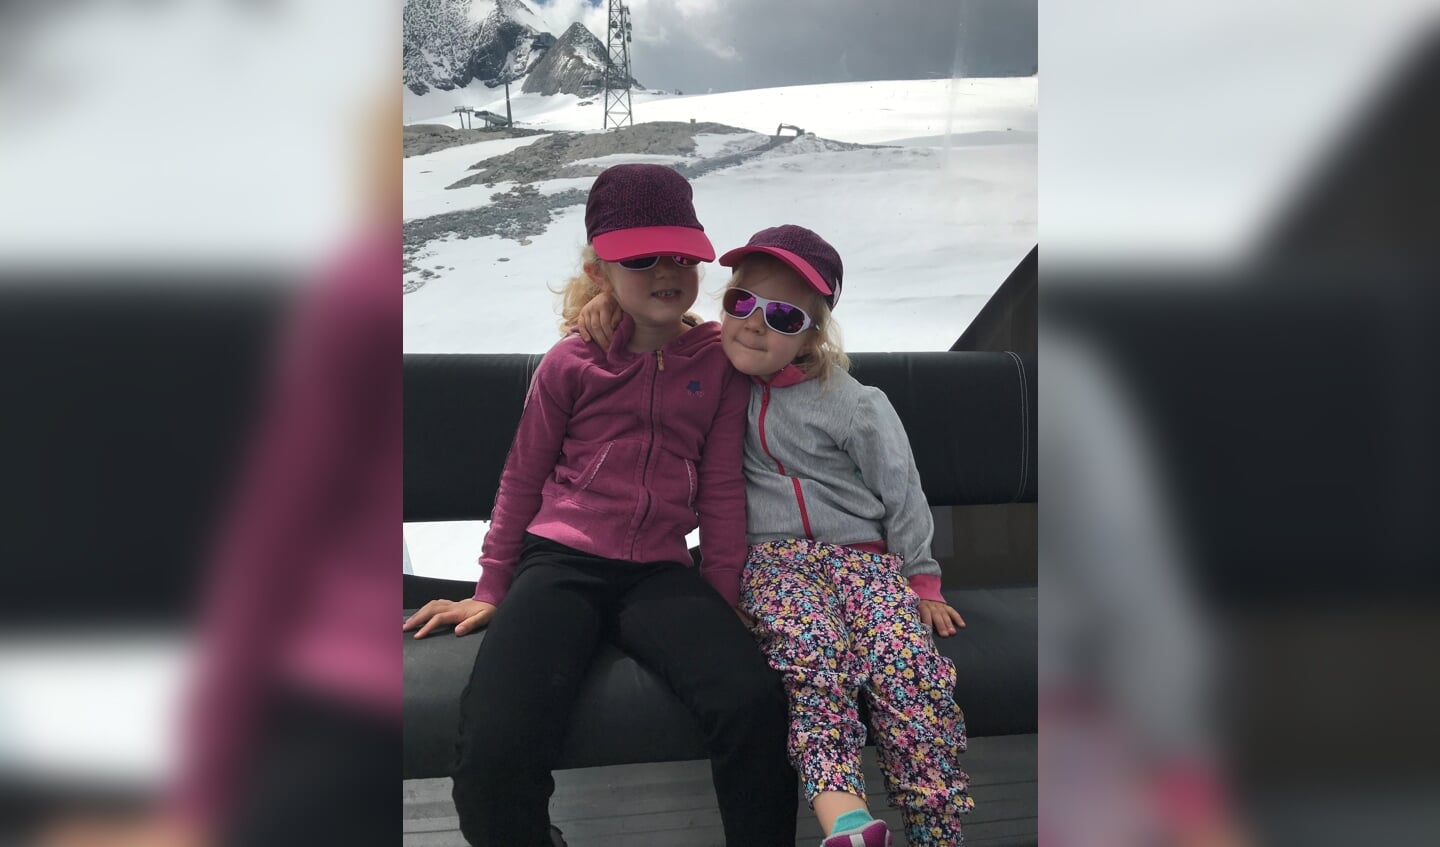 De zusjes Nora en Bente Vorstenbosch vieren de zomervakantie in Oostenrijk. Een dagje naar 3000 mtr hoog zodat we in de sneeuw zitten. Een tocht met 5 liften met een duur van 1,5 uur.